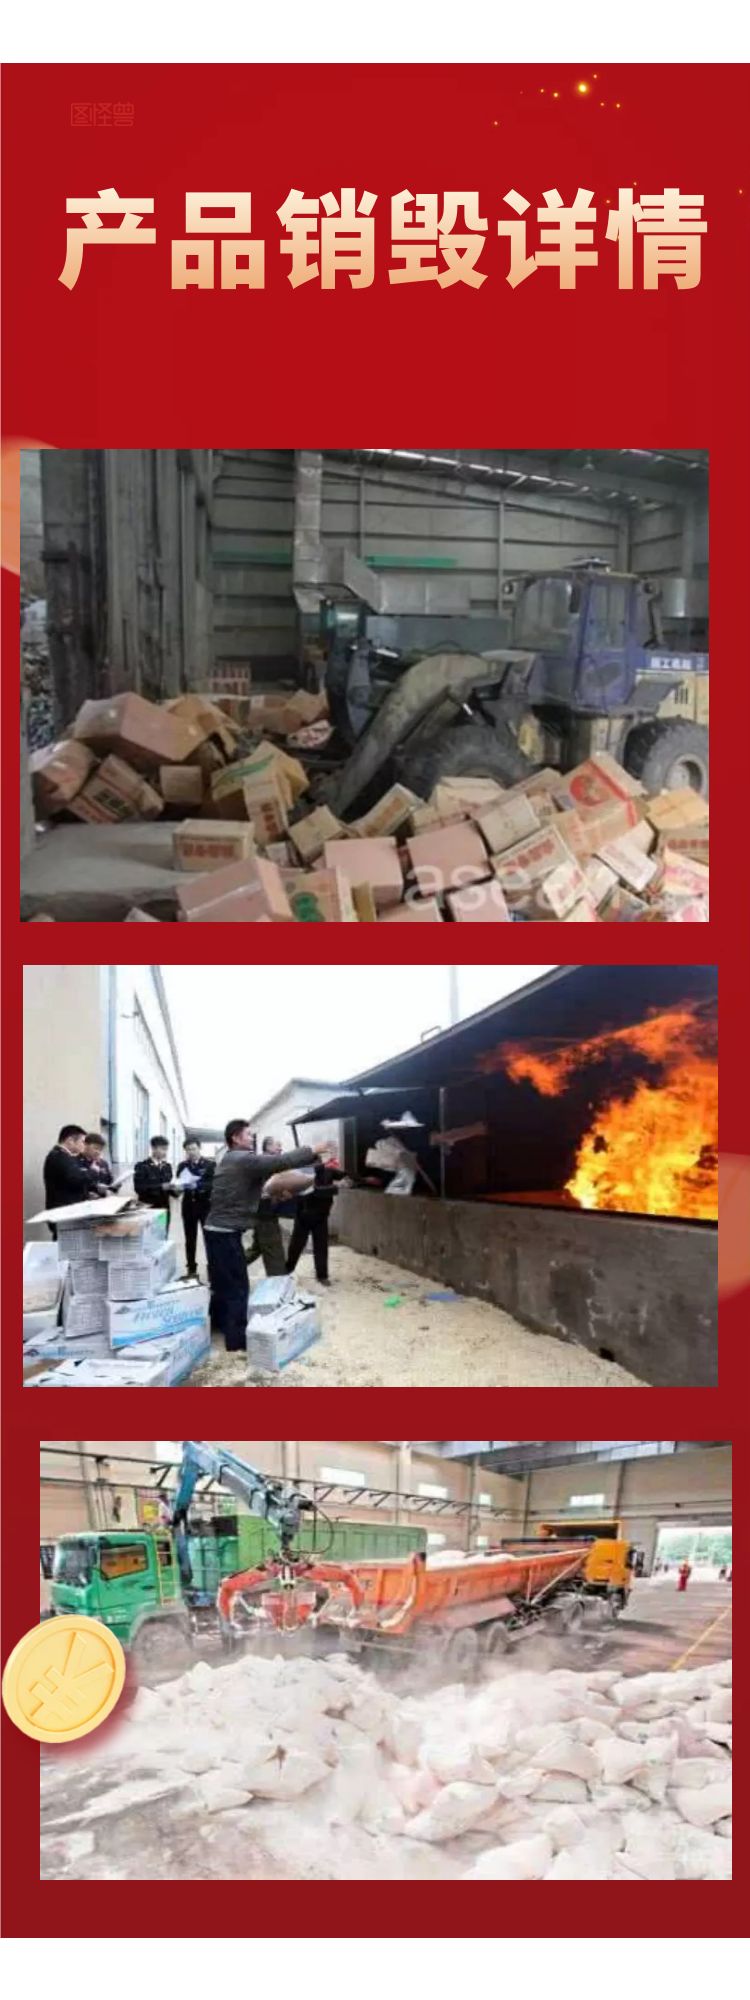 广州荔湾区过期普通药品销毁机构环保焚烧无害化处置